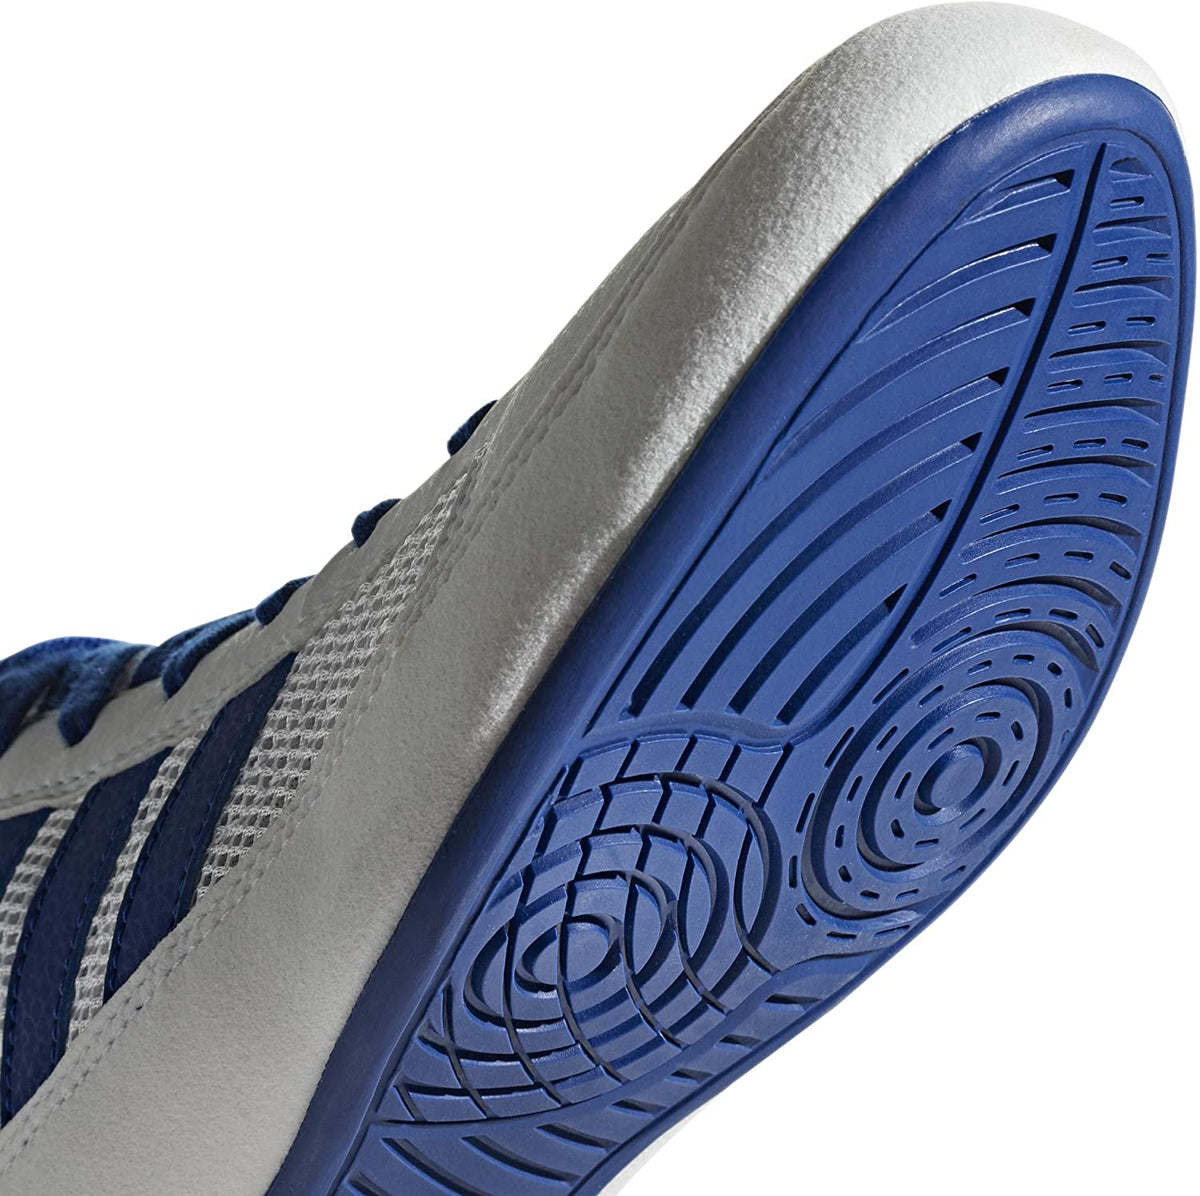 Adidas Havoc Ringerschuhe in der Farbe Weiss/Blau/Rot. Ein schlanker, minimalistischer Ringerschuh mit toller Bodenhaftung und einem extra Klettverschluss am Knöchel um die Schnürung sicher verstaut zu halten. Ideal für Training und Wettkampf.